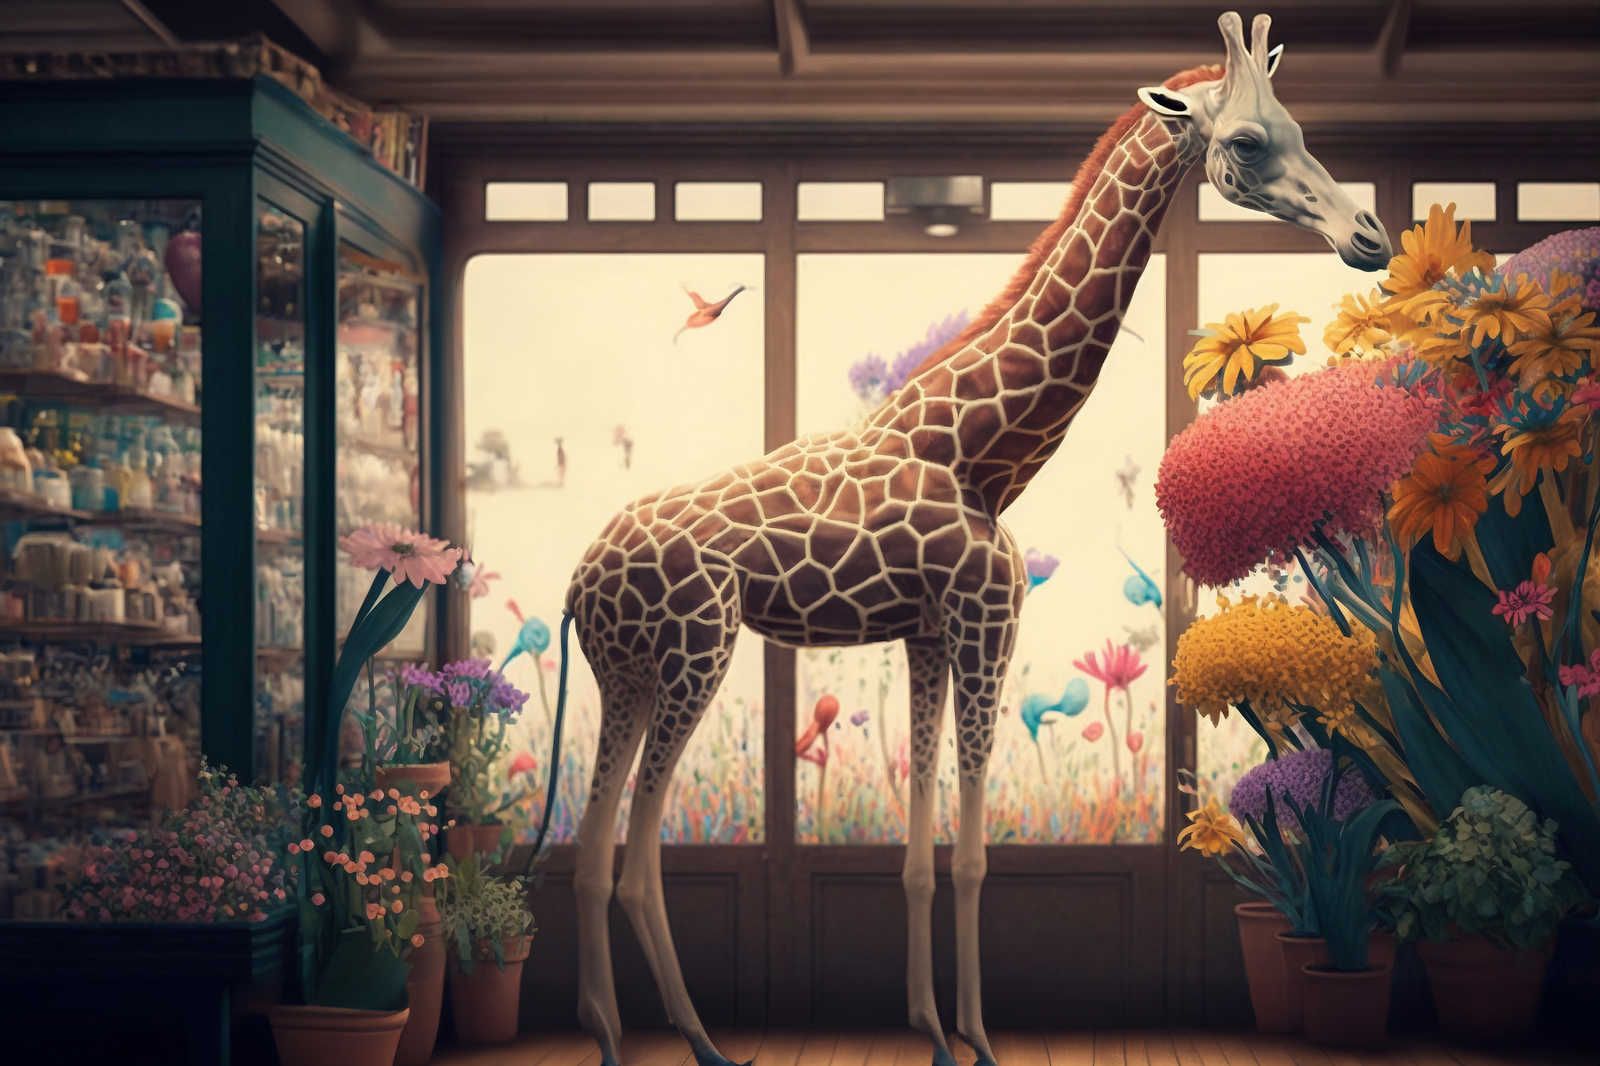             KI-Leinwandbild »flower giraffe« – 90 cm x 60 cm
        